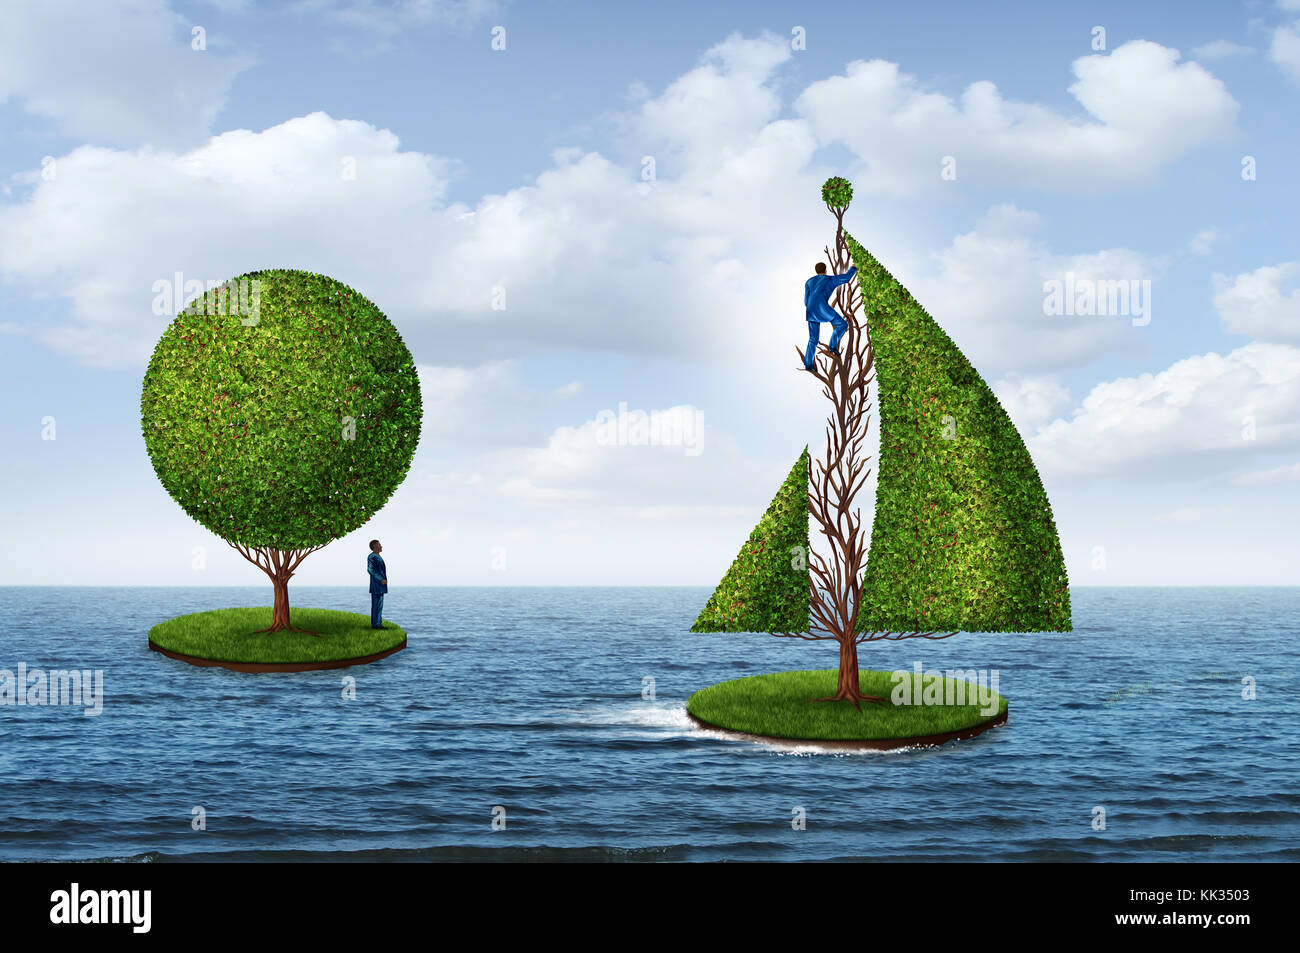 Smart Business Planung für die Zukunft als eine Person weg segeln zum Erfolg mit einem Baum Segeln und ein anderer Mann immer noch auf einer Insel. Stockfoto